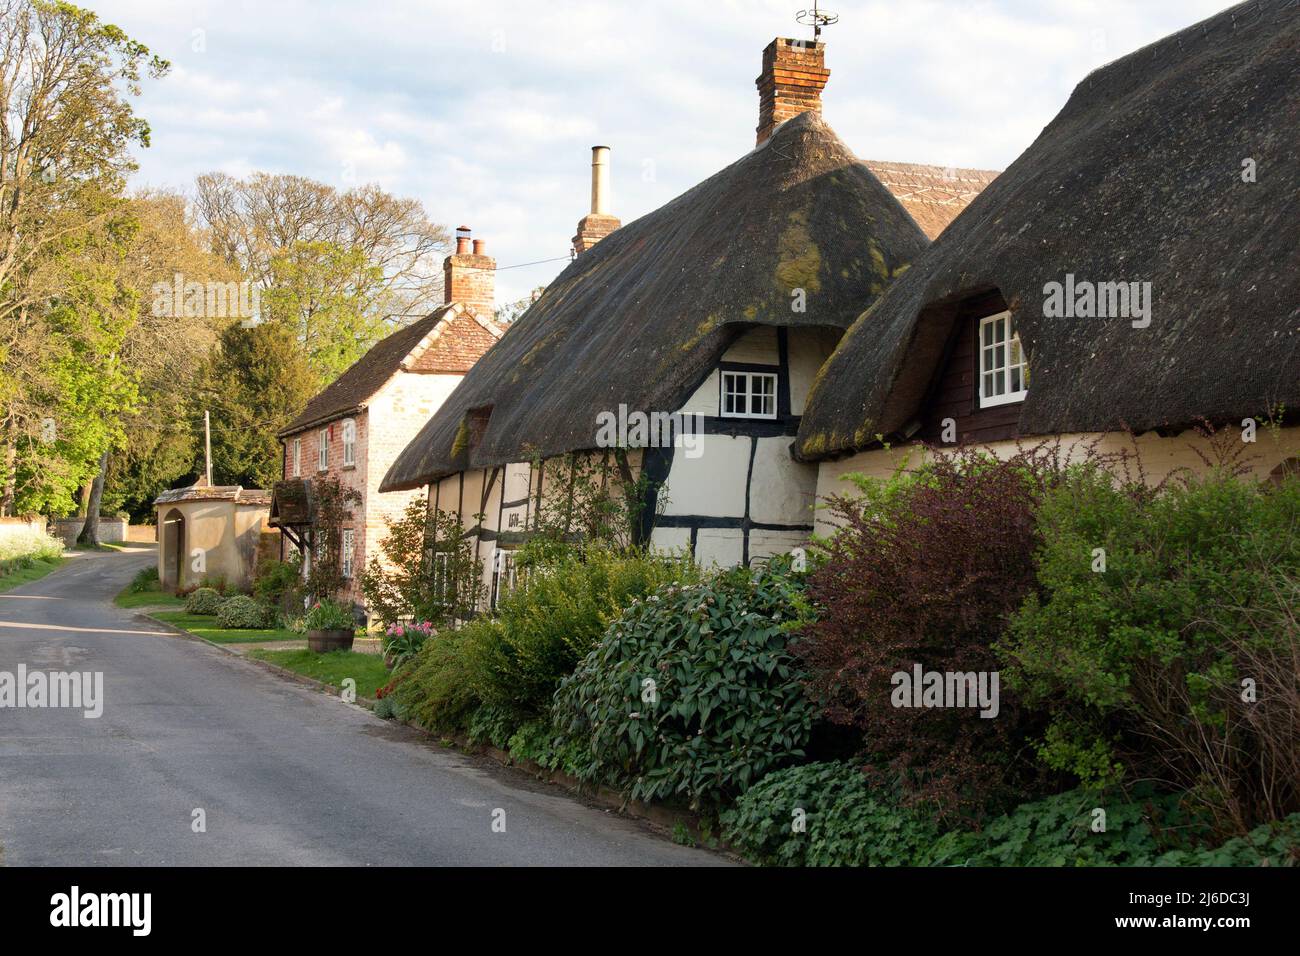 Chalets de chaume sur l'église Lane, village historique de Wherwell, Test Valley, nr Stockbridge, Hampshire, Angleterre Banque D'Images